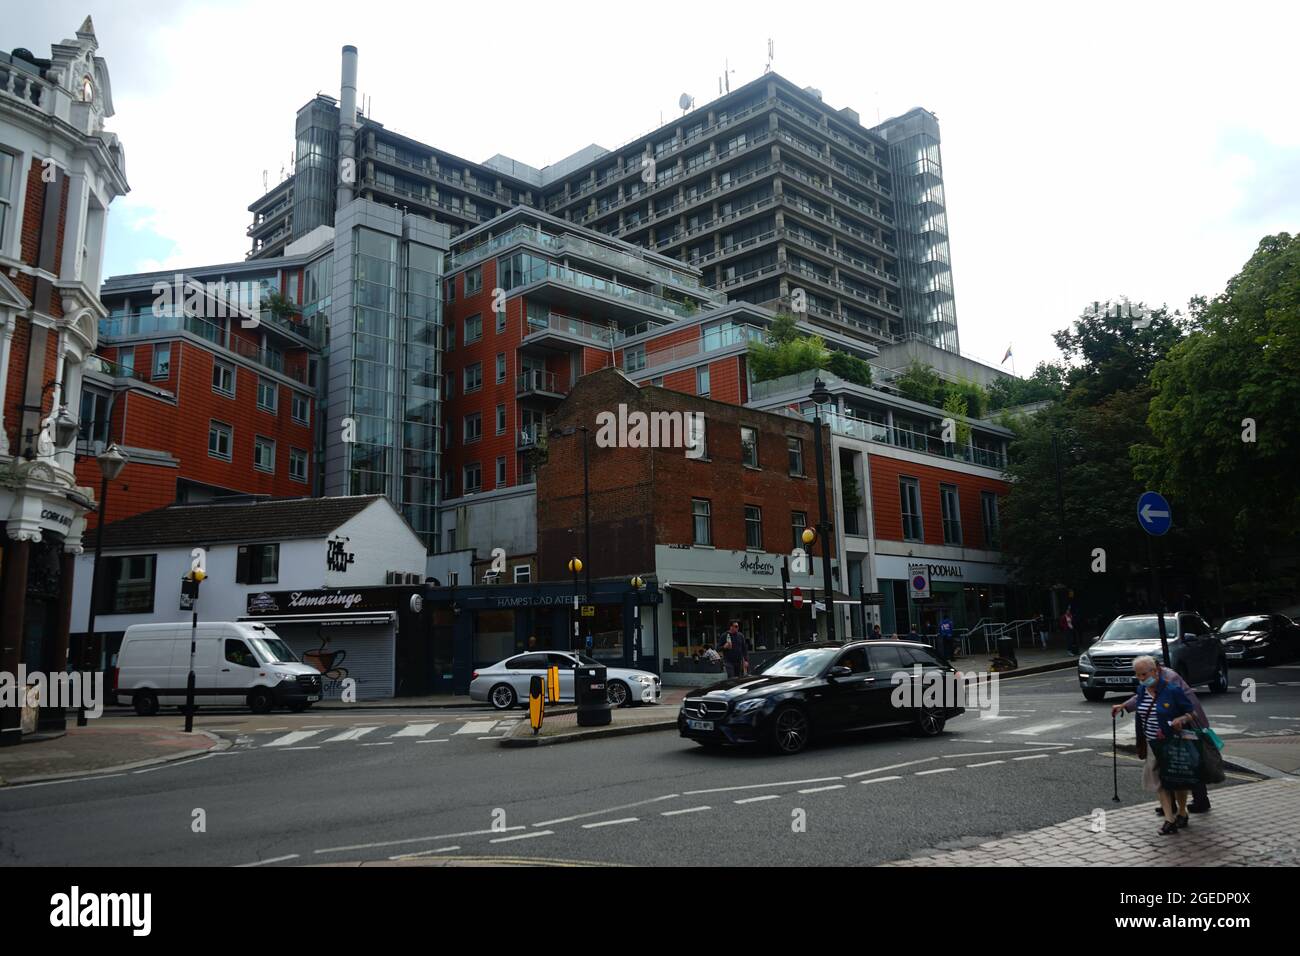 La jonction de Elm St, S.end Green et Fleet Rd avec le Royal Free Hospital en arrière-plan Banque D'Images